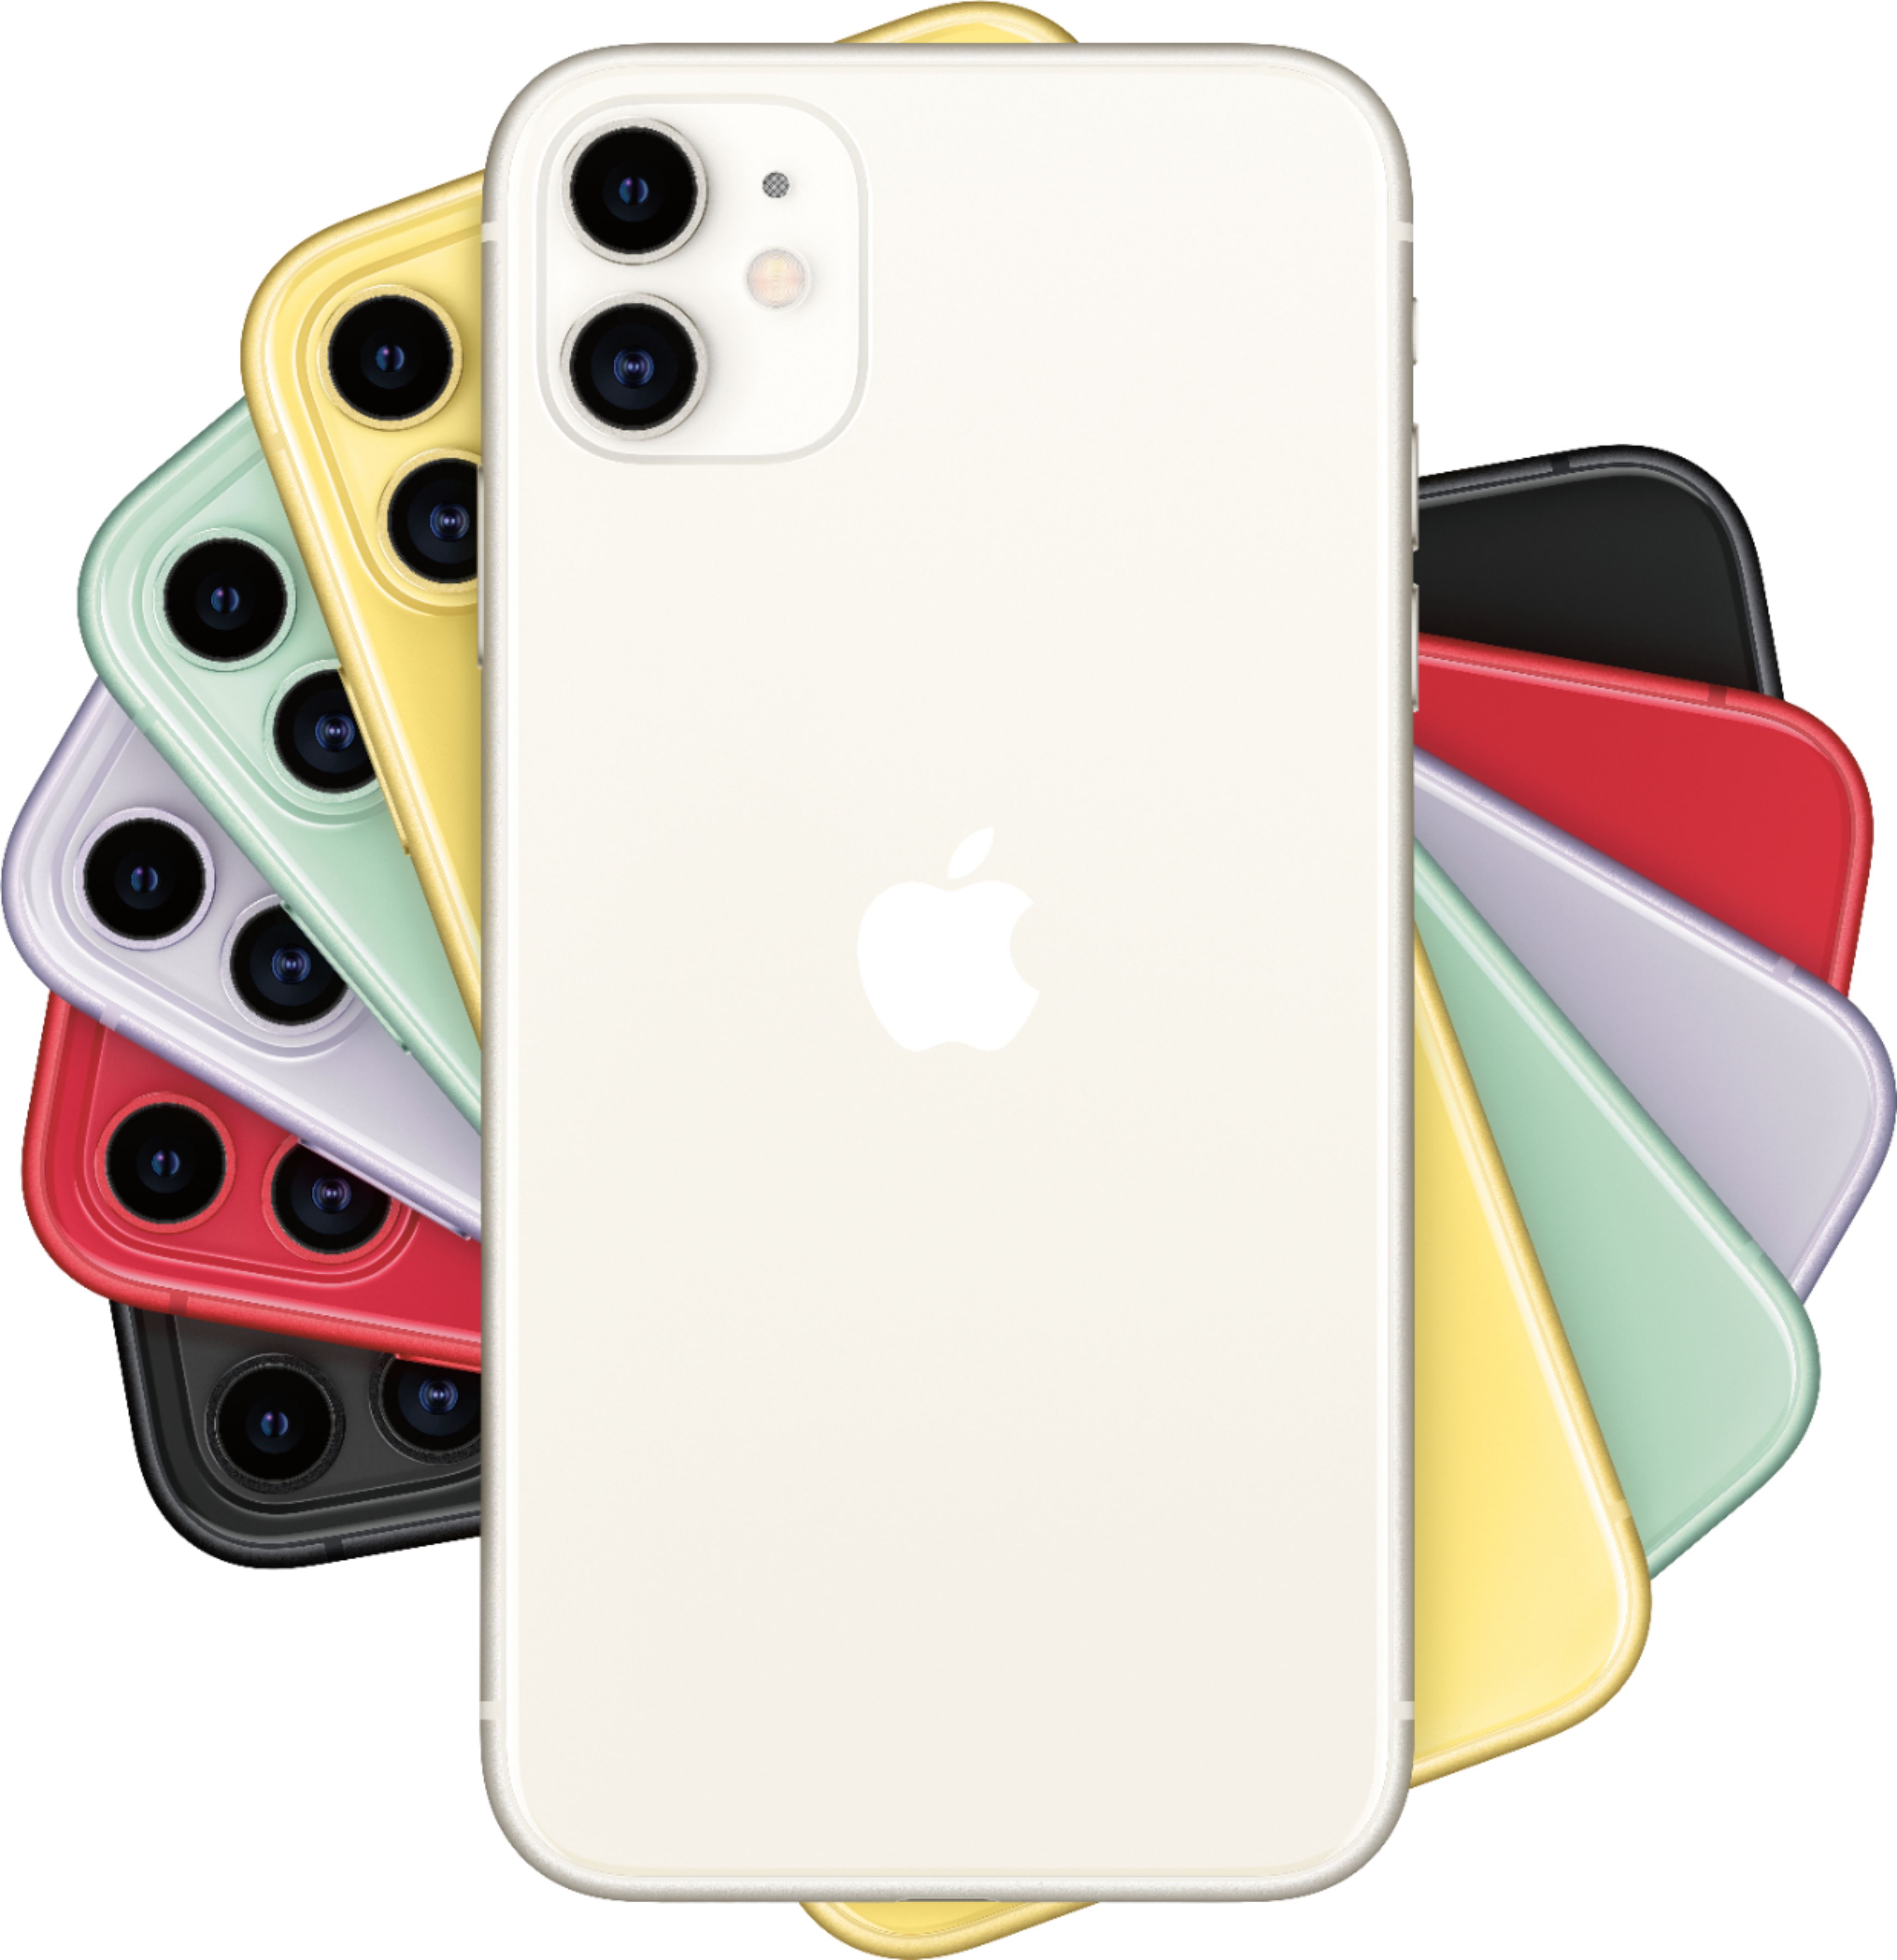 週間売れ筋 iPhone 11 ホワイト 64 GB - スマートフォン/携帯電話 